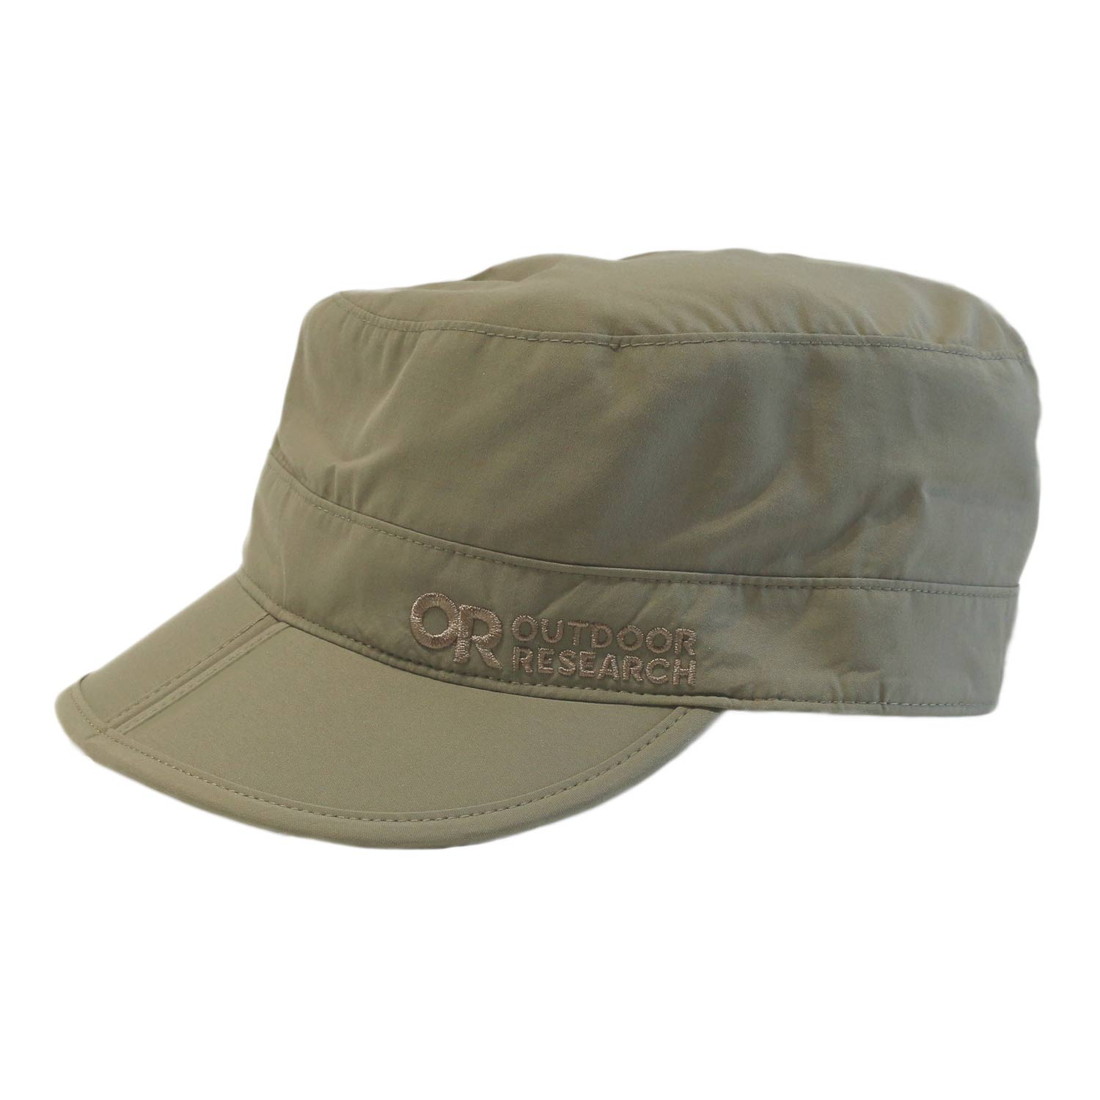 アウトドアリサーチ レイダーポケットキャップ 帽子 レインキャップ 国内正規品  帽子 